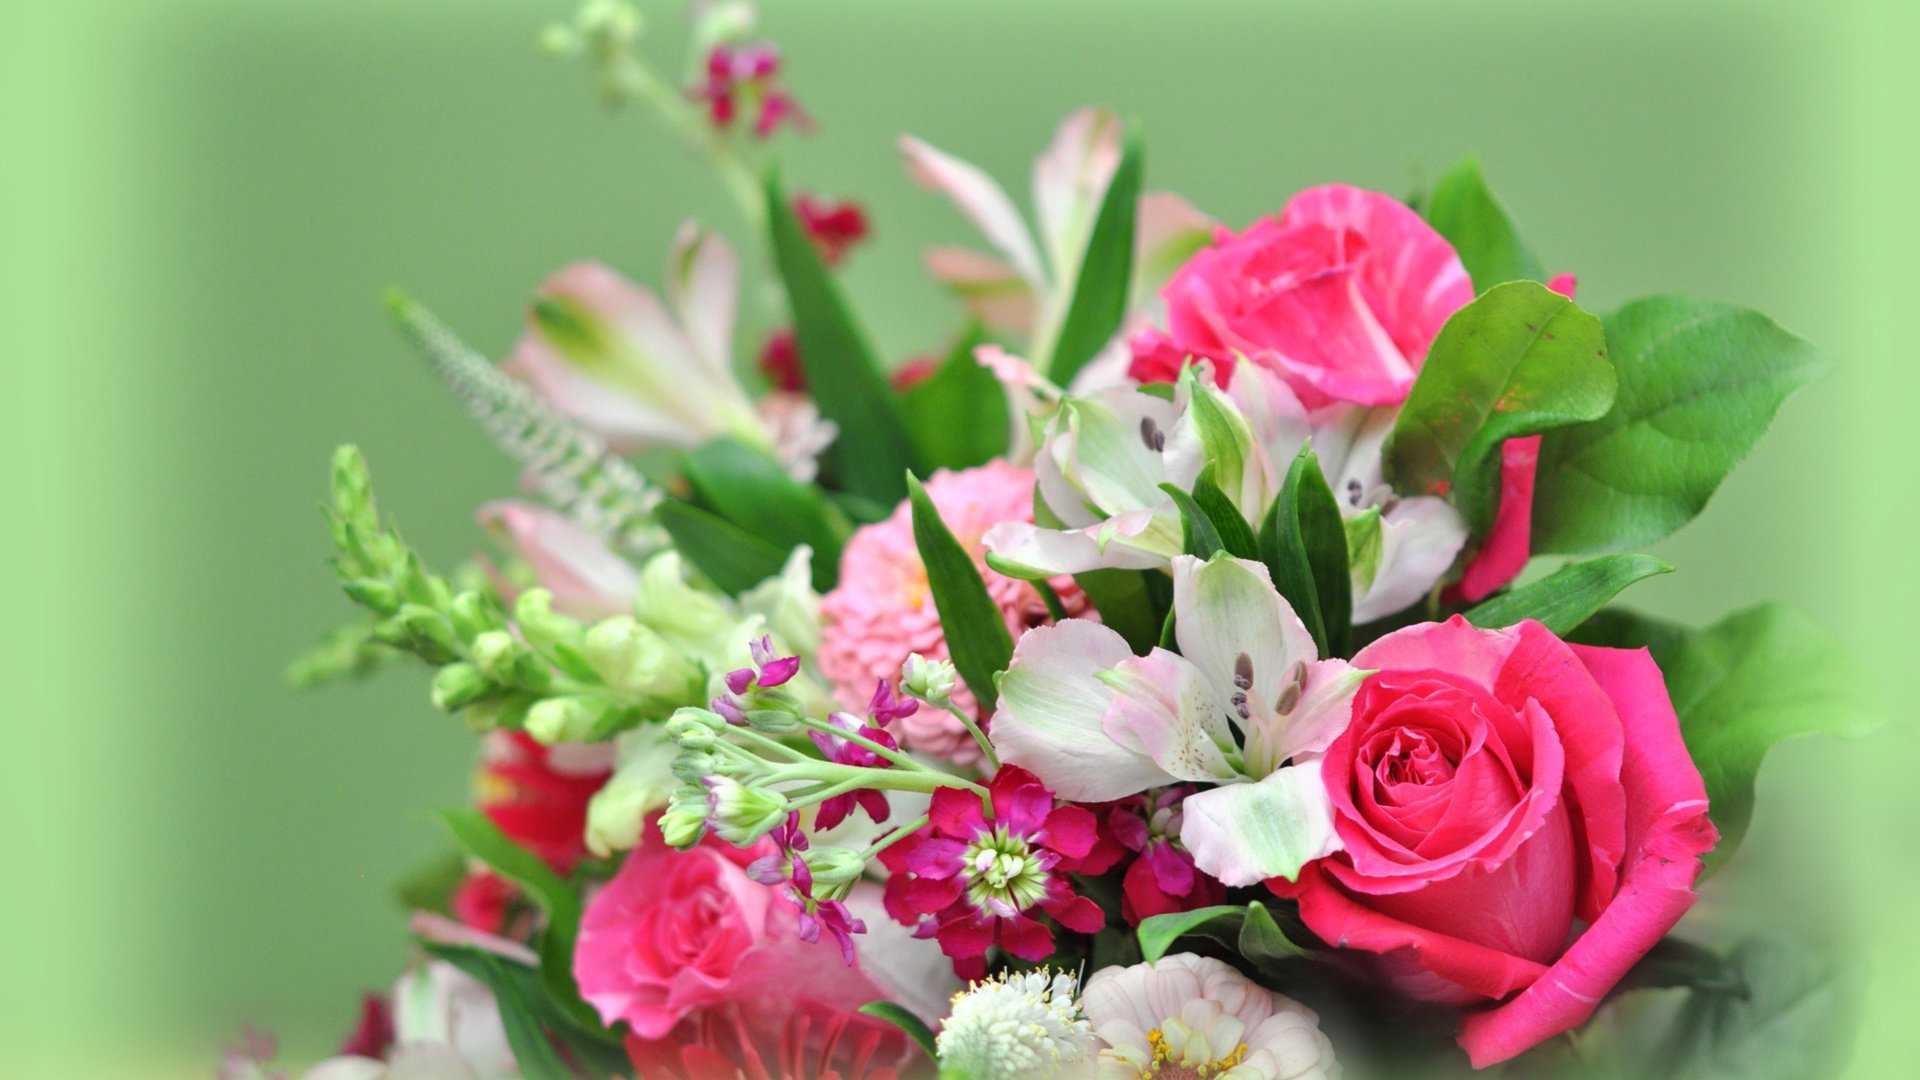 Самые красивые открытки с днем рождения женщине, девушке с красивыми цветами и поздравлением: лучшая подборка